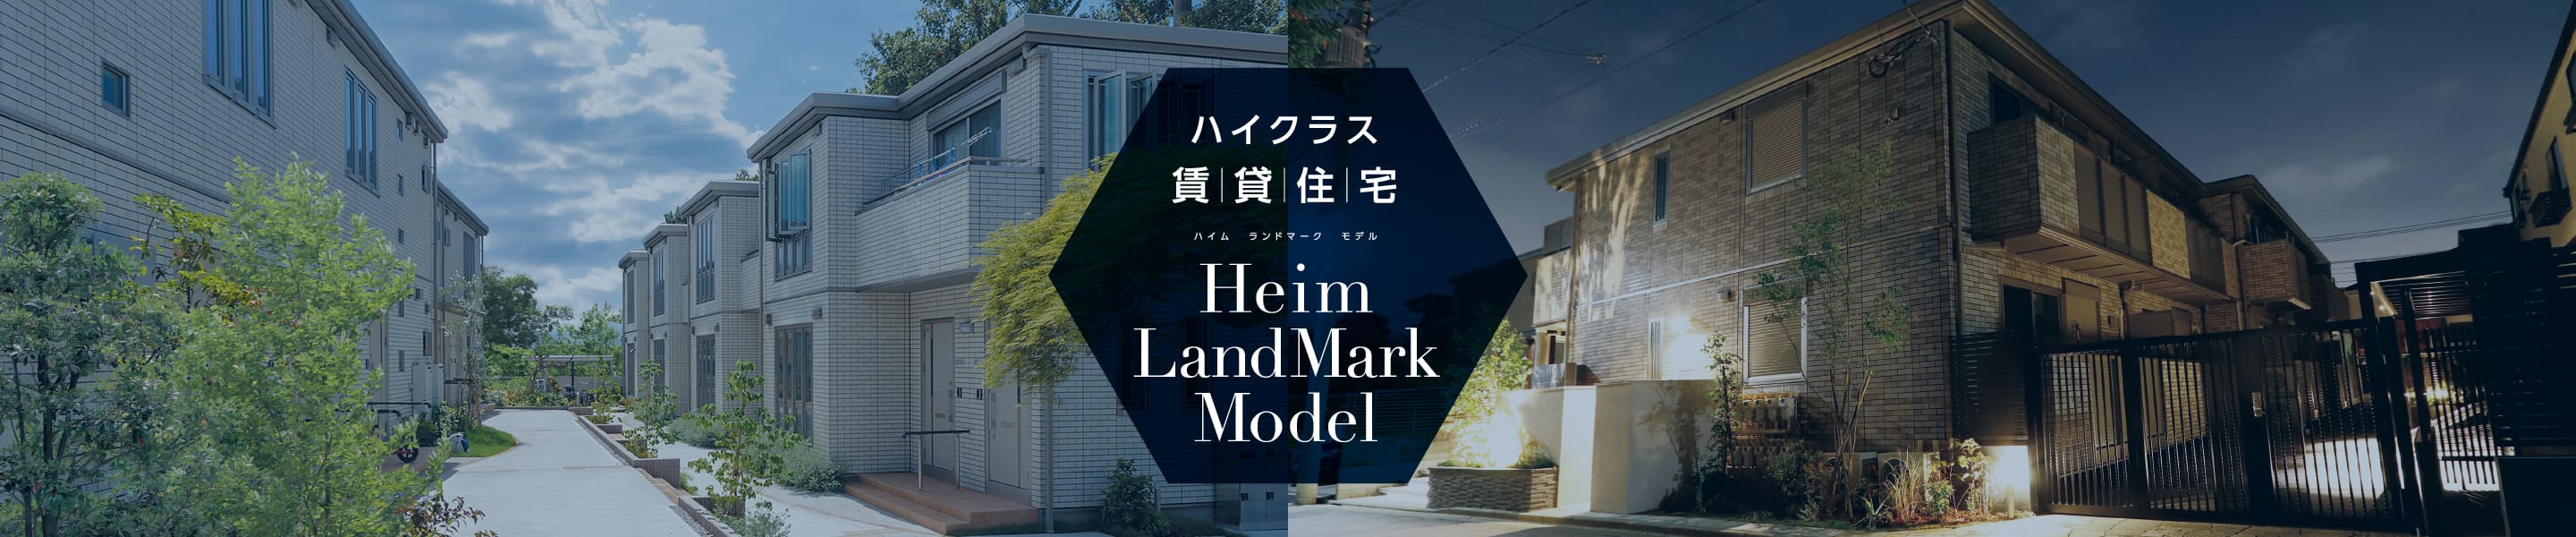 東京セキスイハイム_Heim LandMark Model